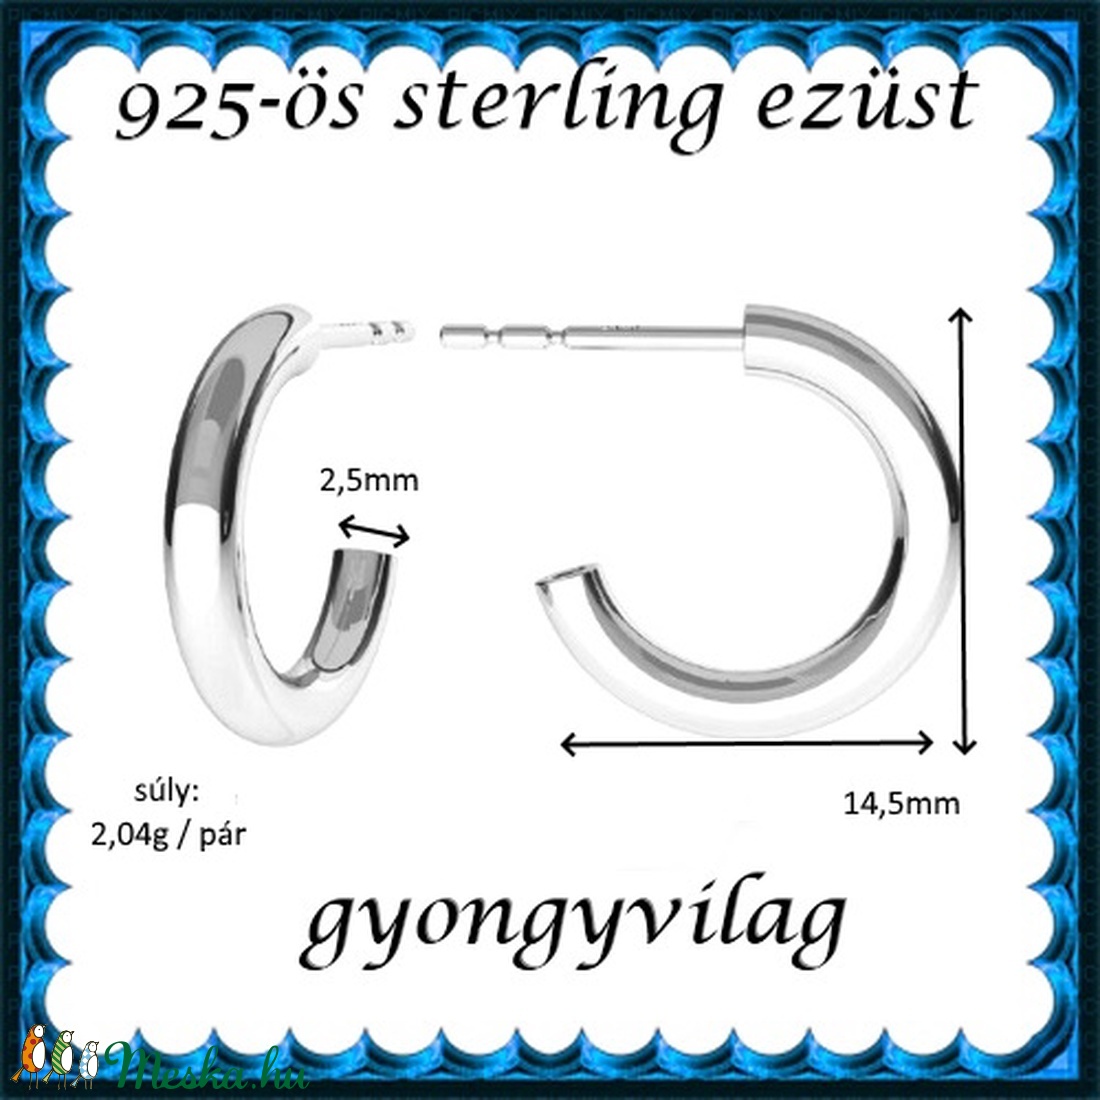  925-ös sterling ezüst: fülbevaló  EF 13 - ékszer - fülbevaló - lógó fülbevaló - Meska.hu